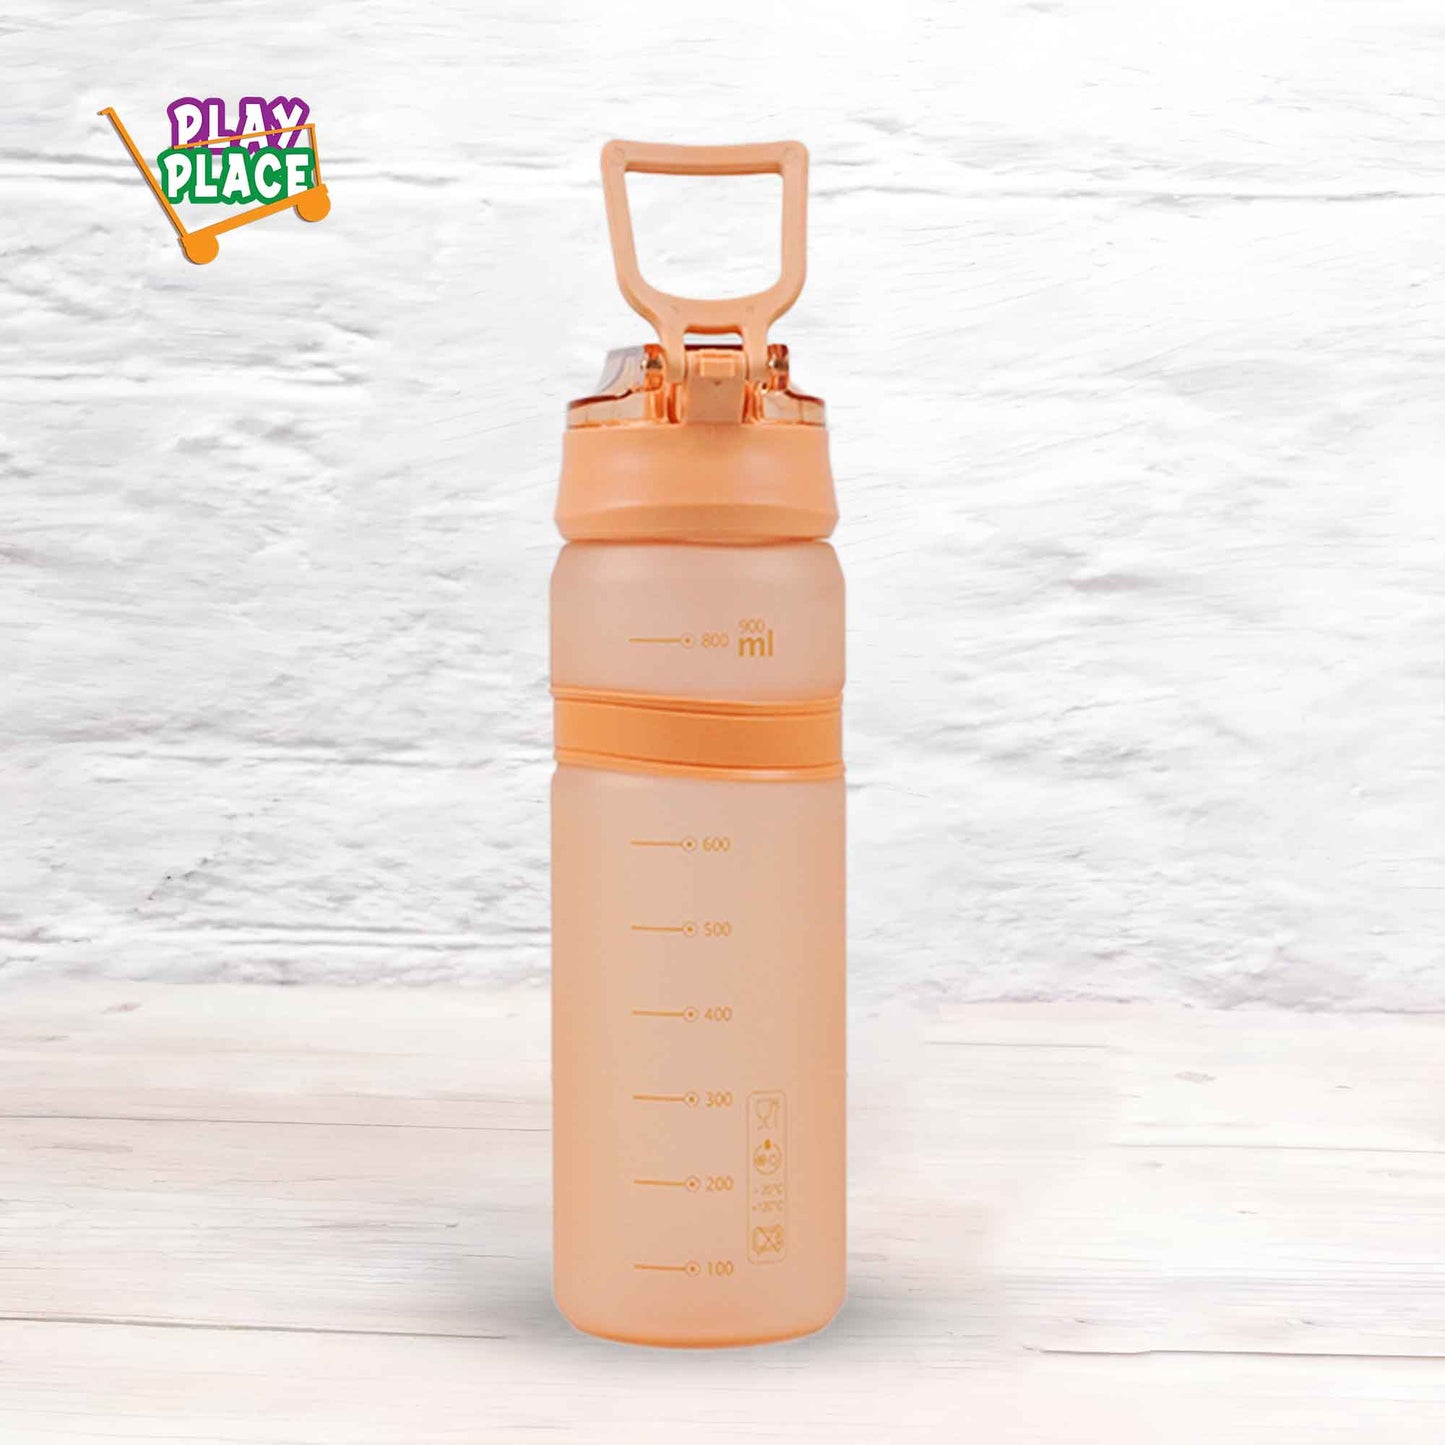 Eyun My Bottle 900ml (Orange)